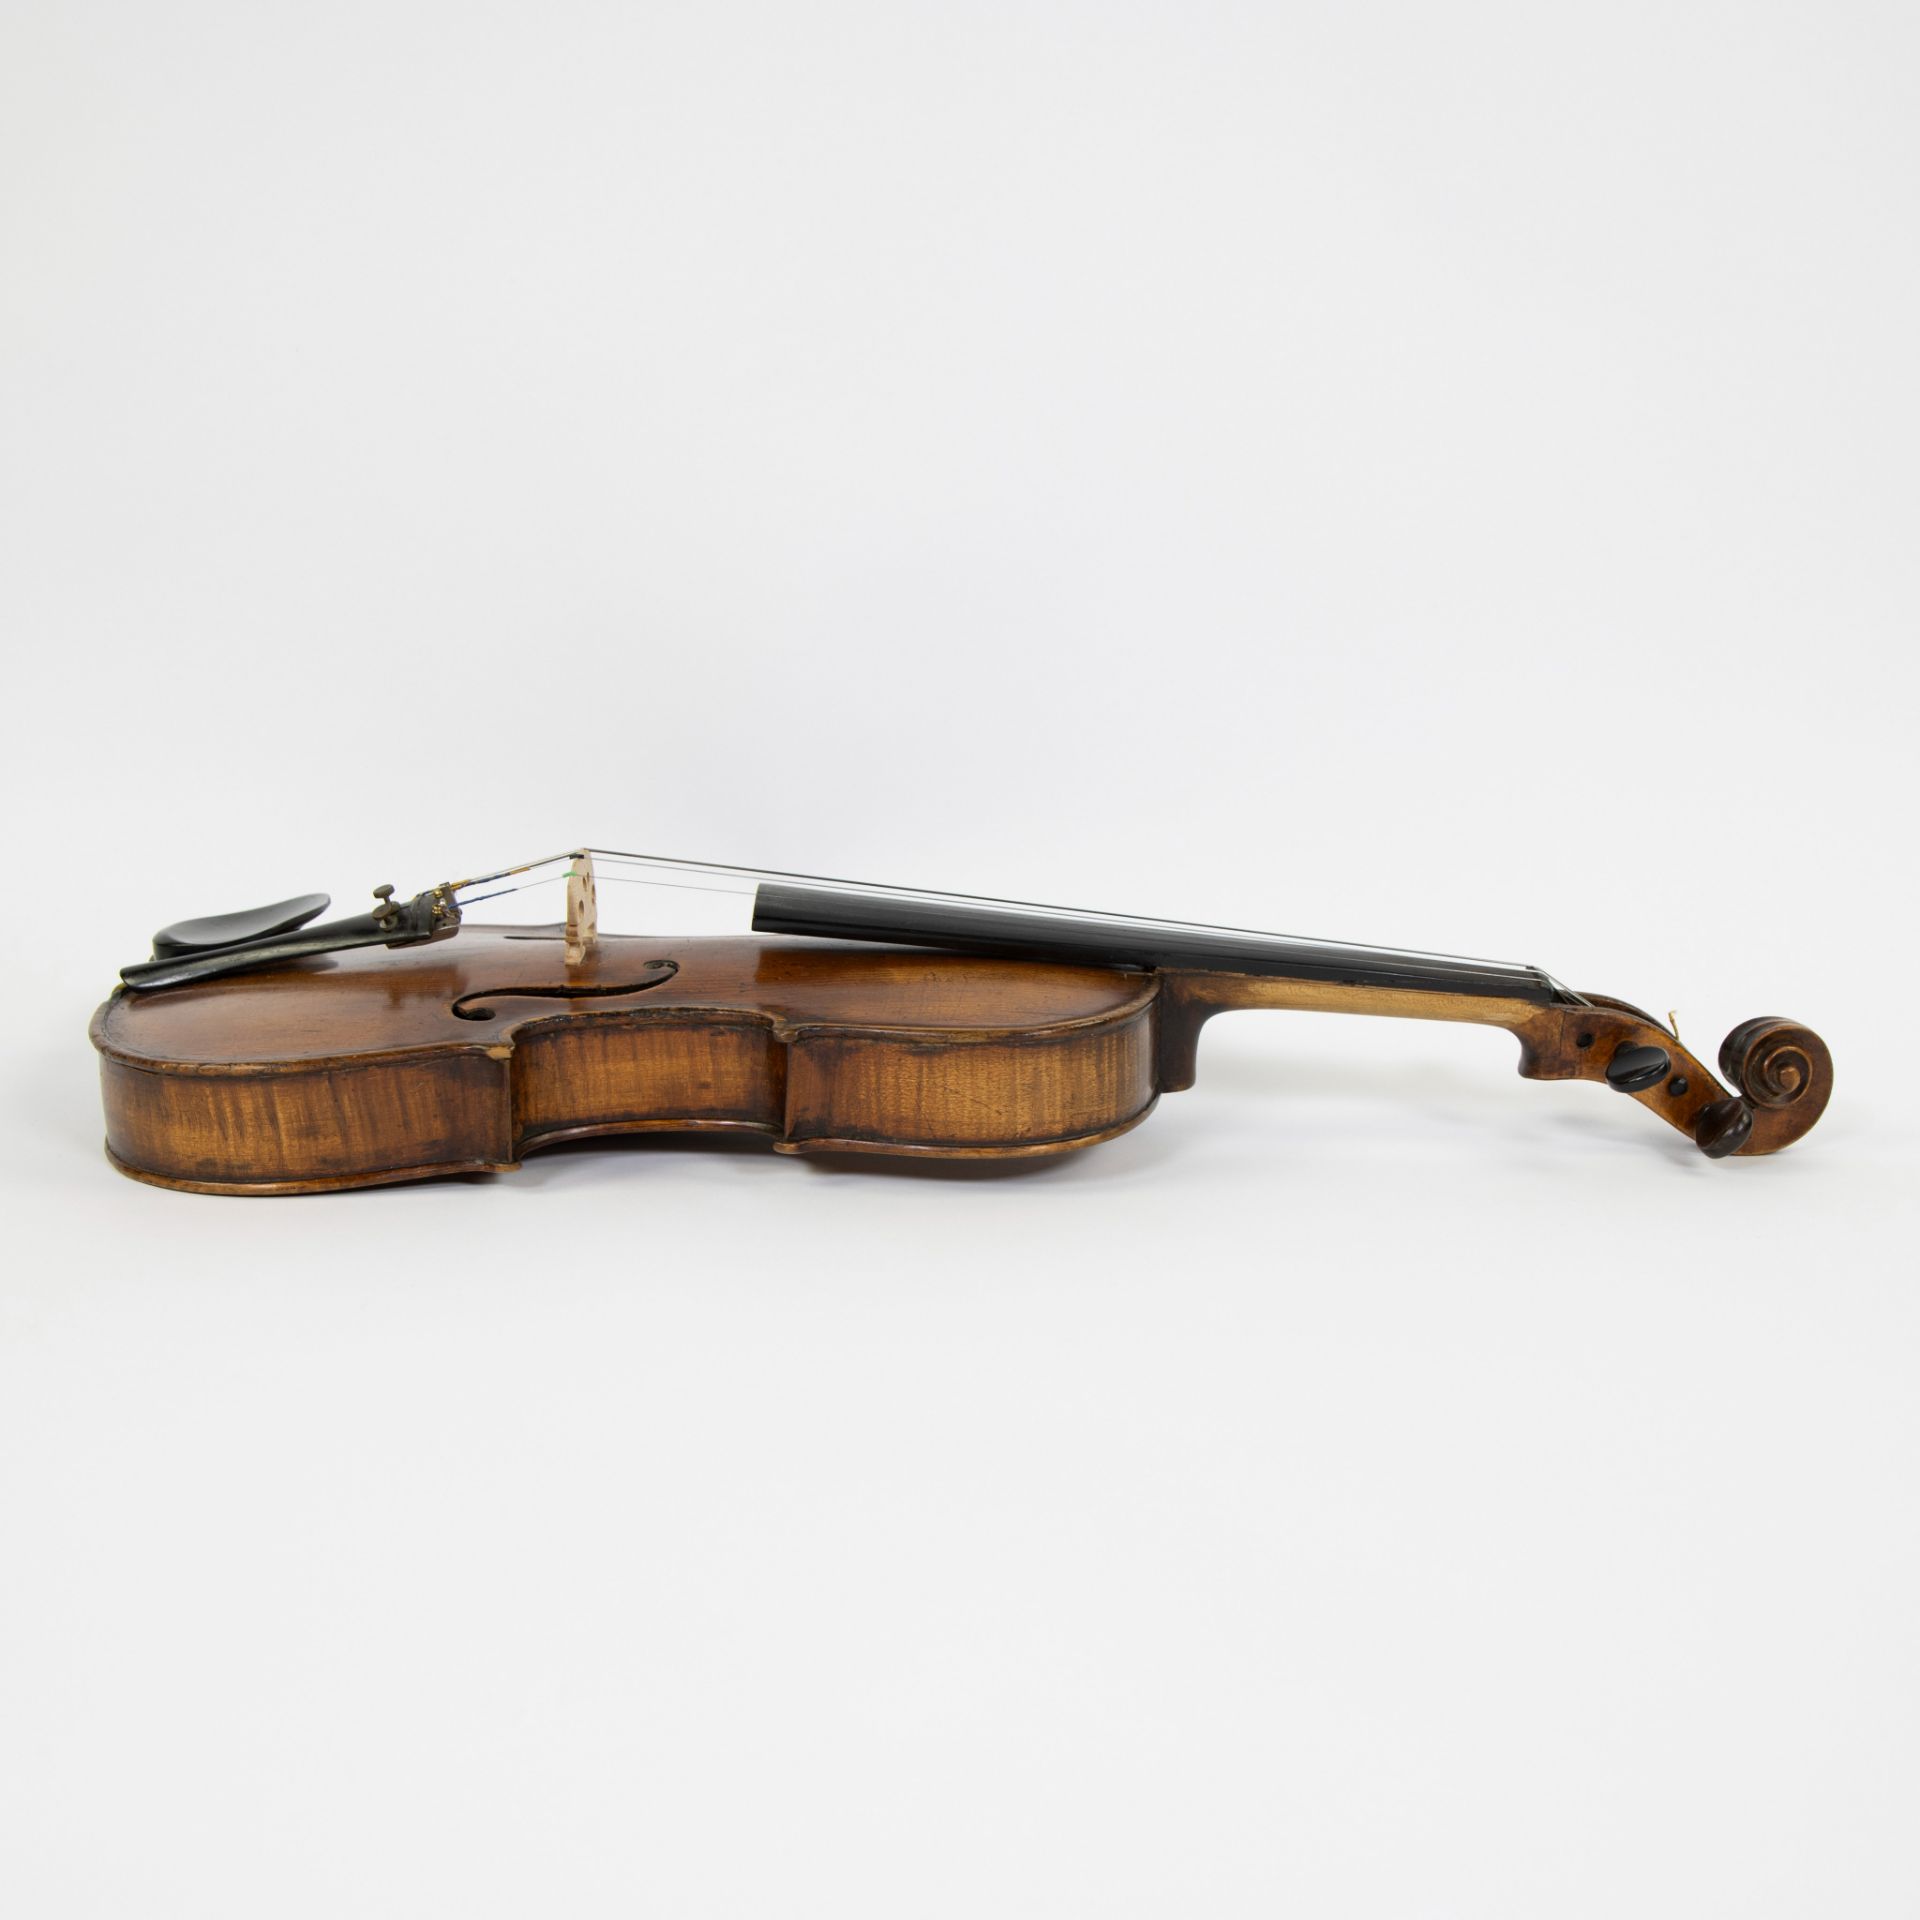 Violin no label, fire stamp heel 'RG', 356mm, wooden case - Image 4 of 5